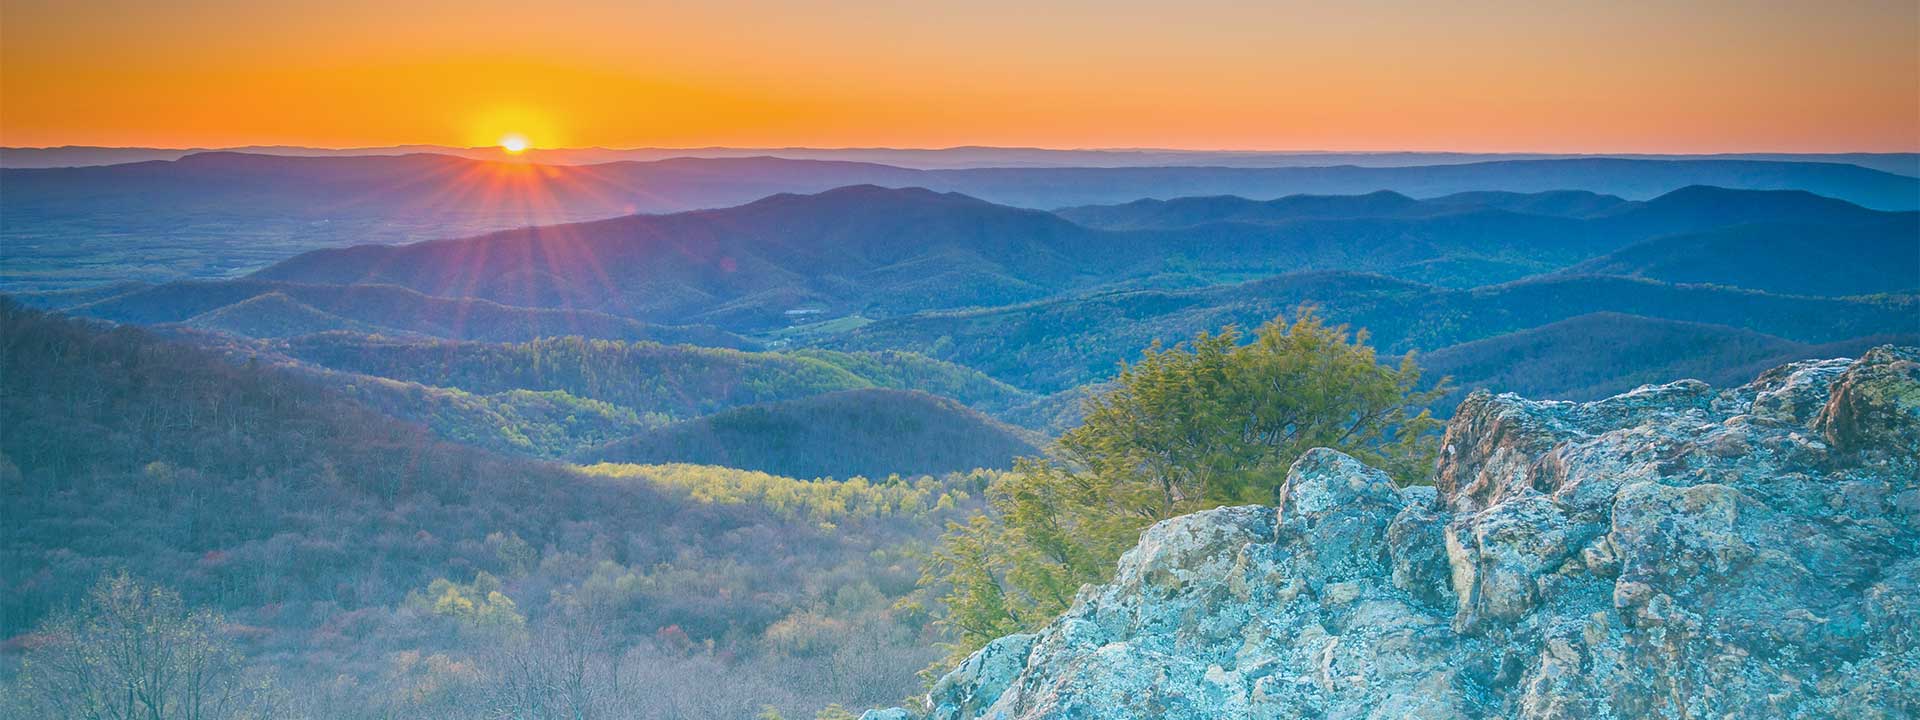 Mountains in Virginia 